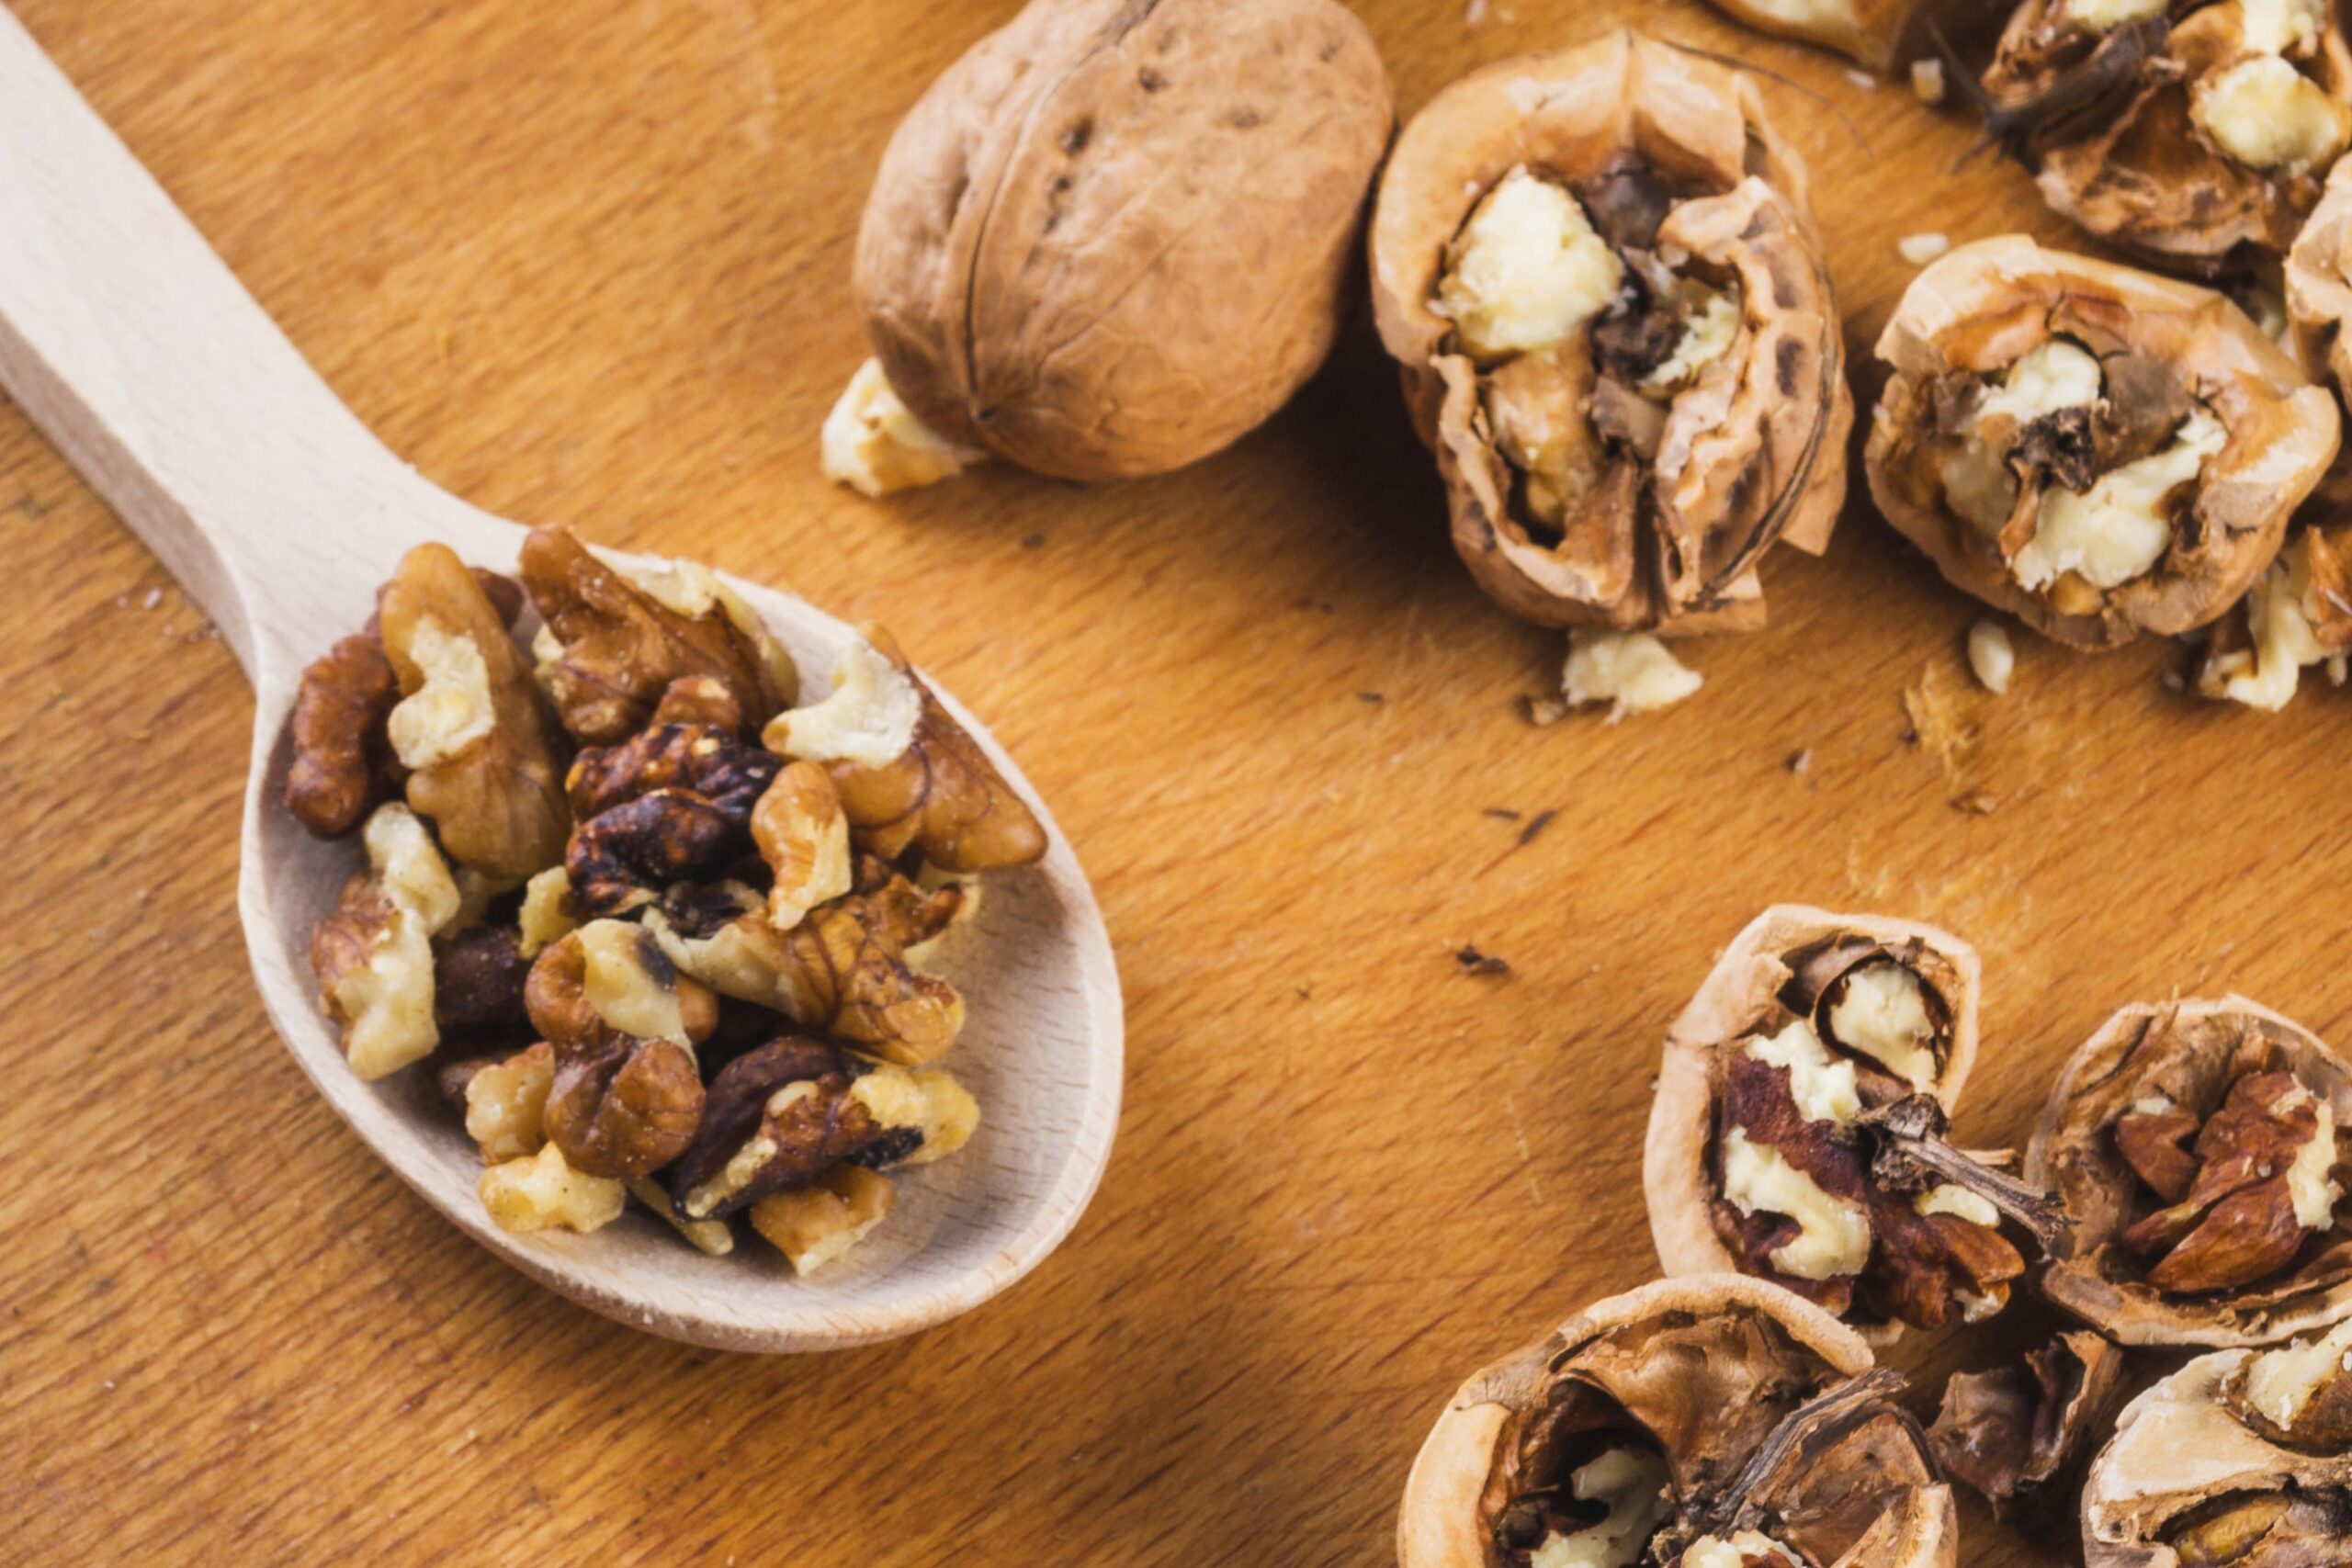 Грецкий орех помогает поддерживать здоровье печени.